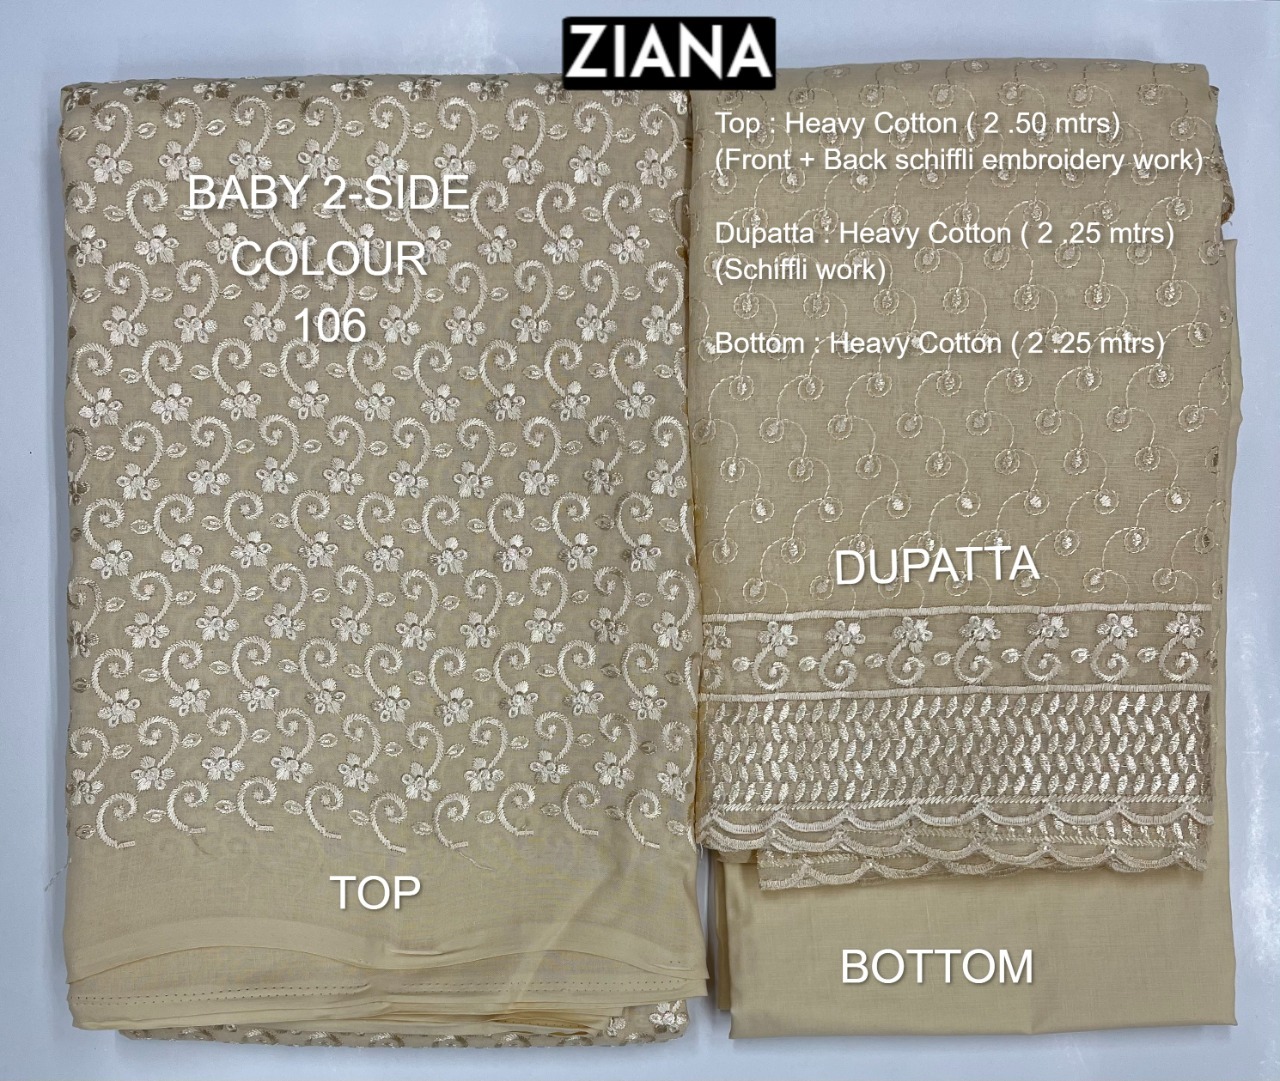 ziana baby 2 side colour 106 cotton decent embroidery salwar suit colour set